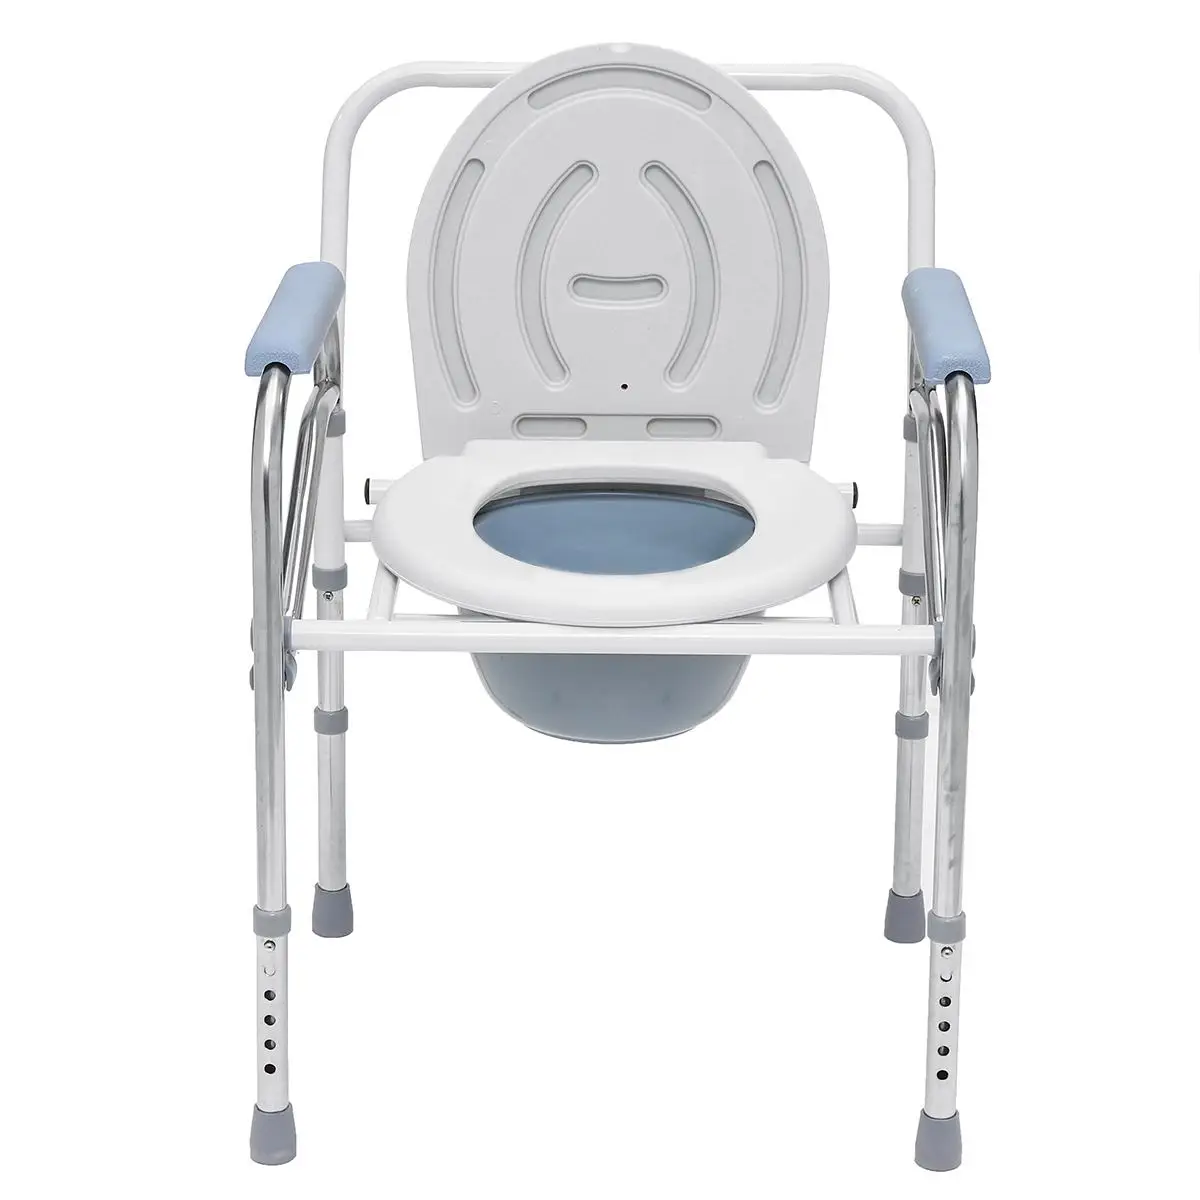 Складной горшок стул Туалет Кресло с горшком Closestool камера горшок портативный для пожилых мужчин женщин из нержавеющей стали